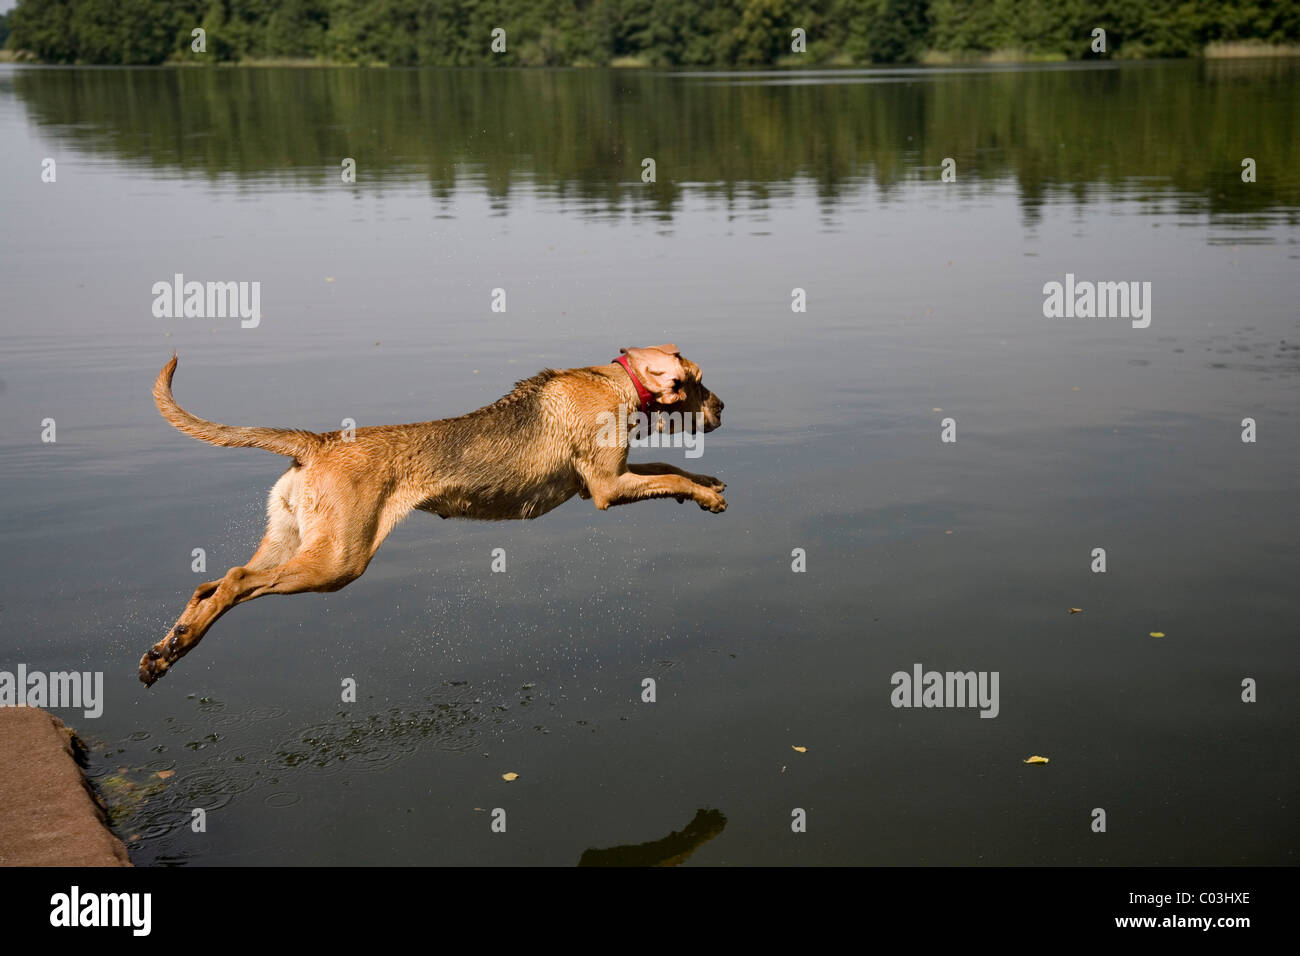 Les jeunes, St-hubert bloodhound chien limier ou chien, chienne saute dans l'eau Banque D'Images